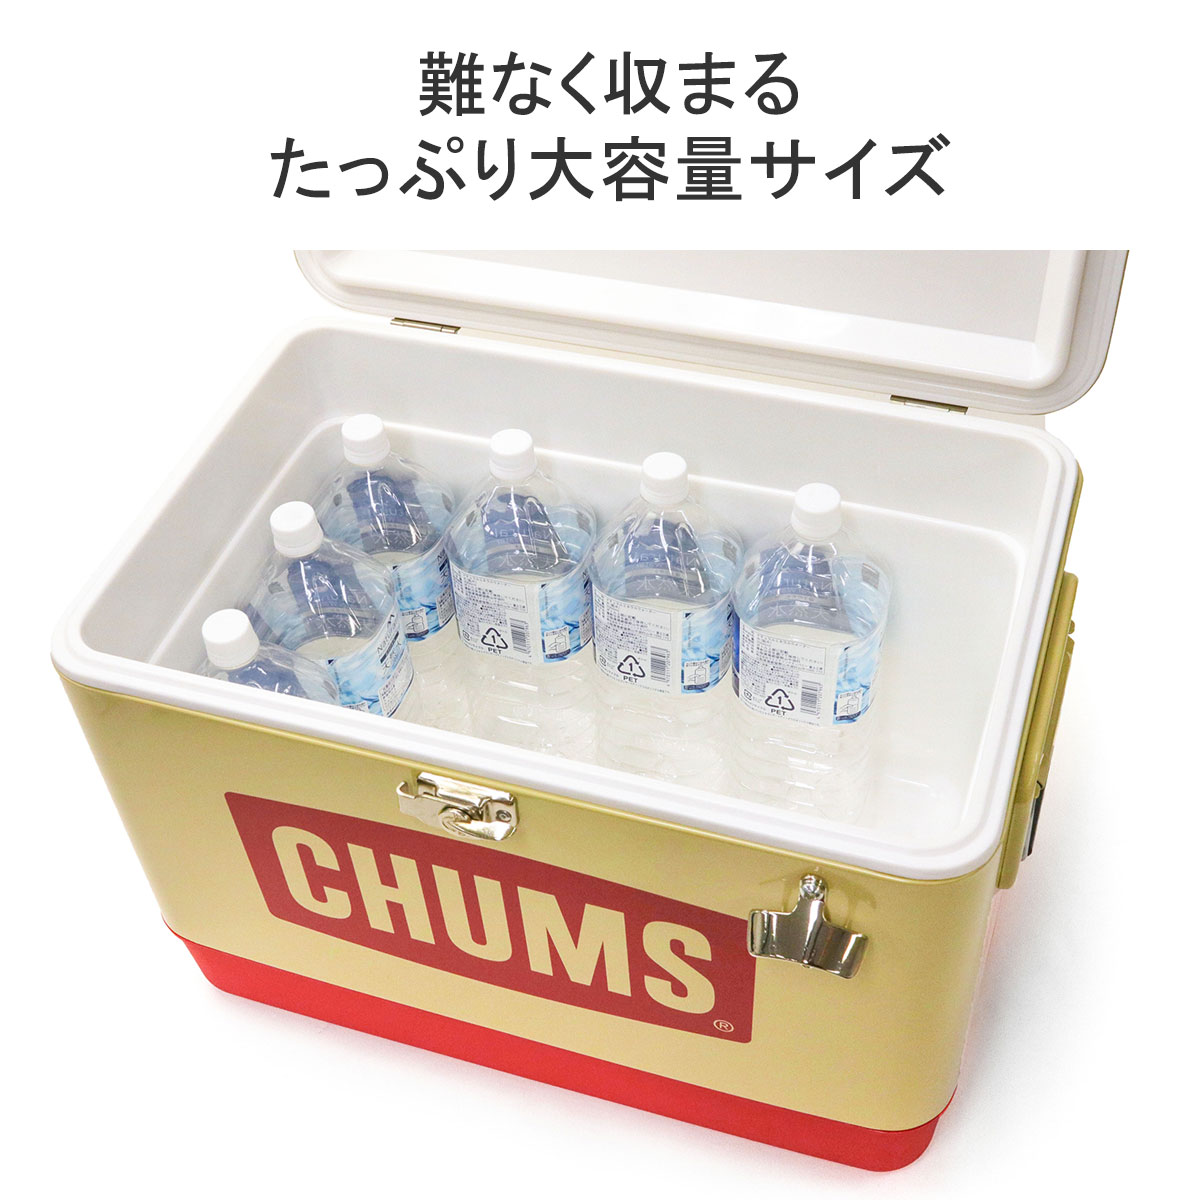 日本正規品 チャムス クーラーボックス CHUMS Steel Cooler Box 54L ハード 大型 大容量 アウトドア キャンプ 水栓  CH62-1802 :CHU00357:ギャレリア Bag&Luggage - 通販 - Yahoo!ショッピング